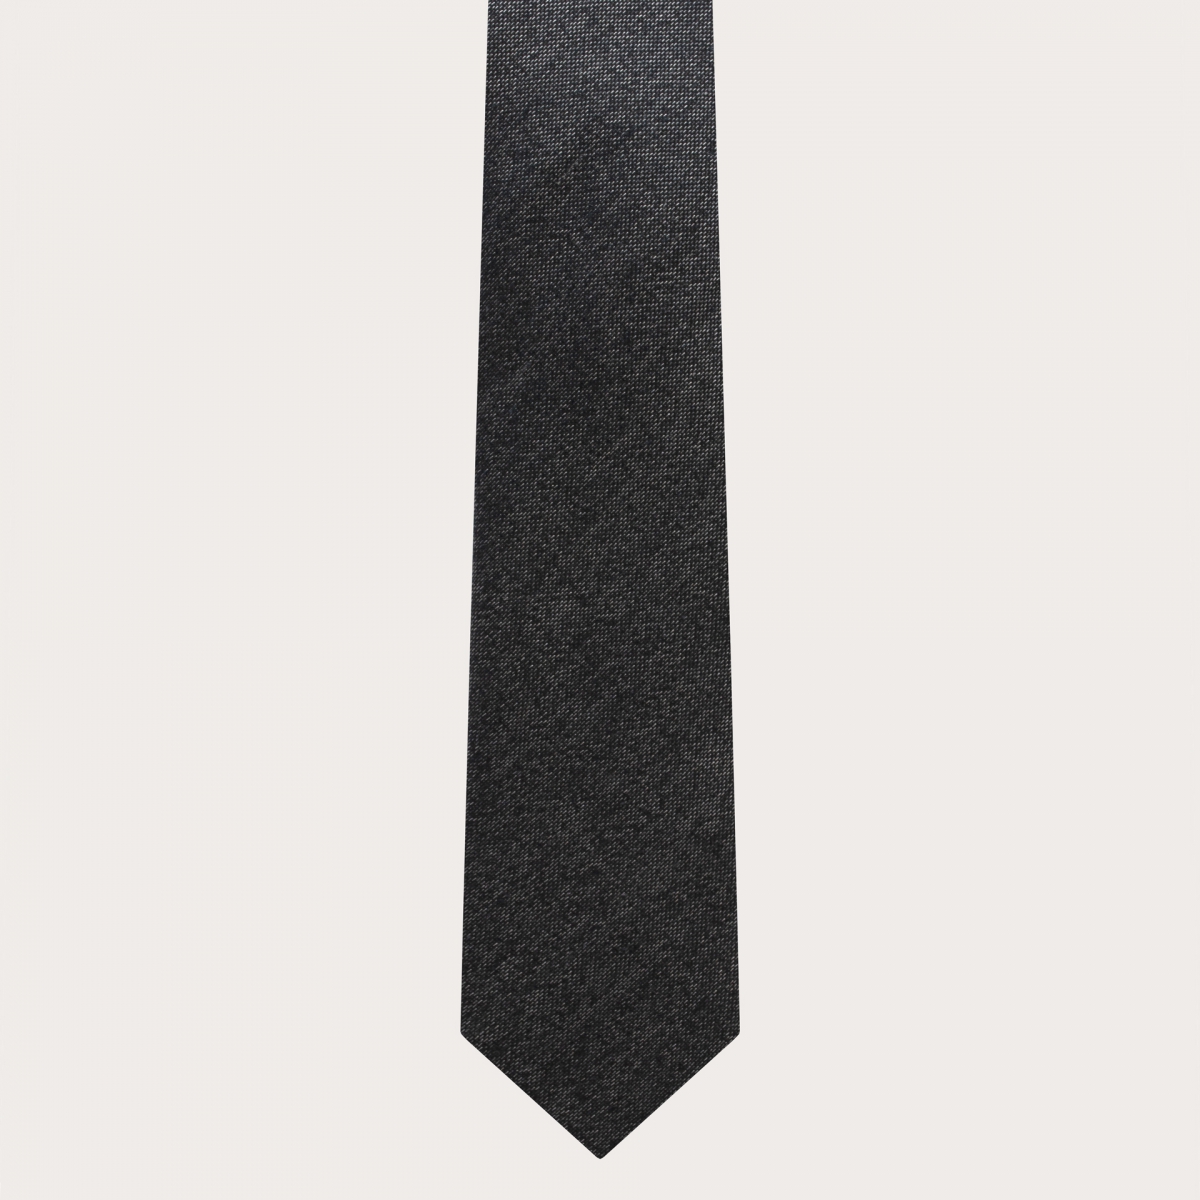 BRUCLE Raffiniertes Herren-Set aus Hosenträgern, Krawatte und Einstecktuch aus melierter grauer Seide